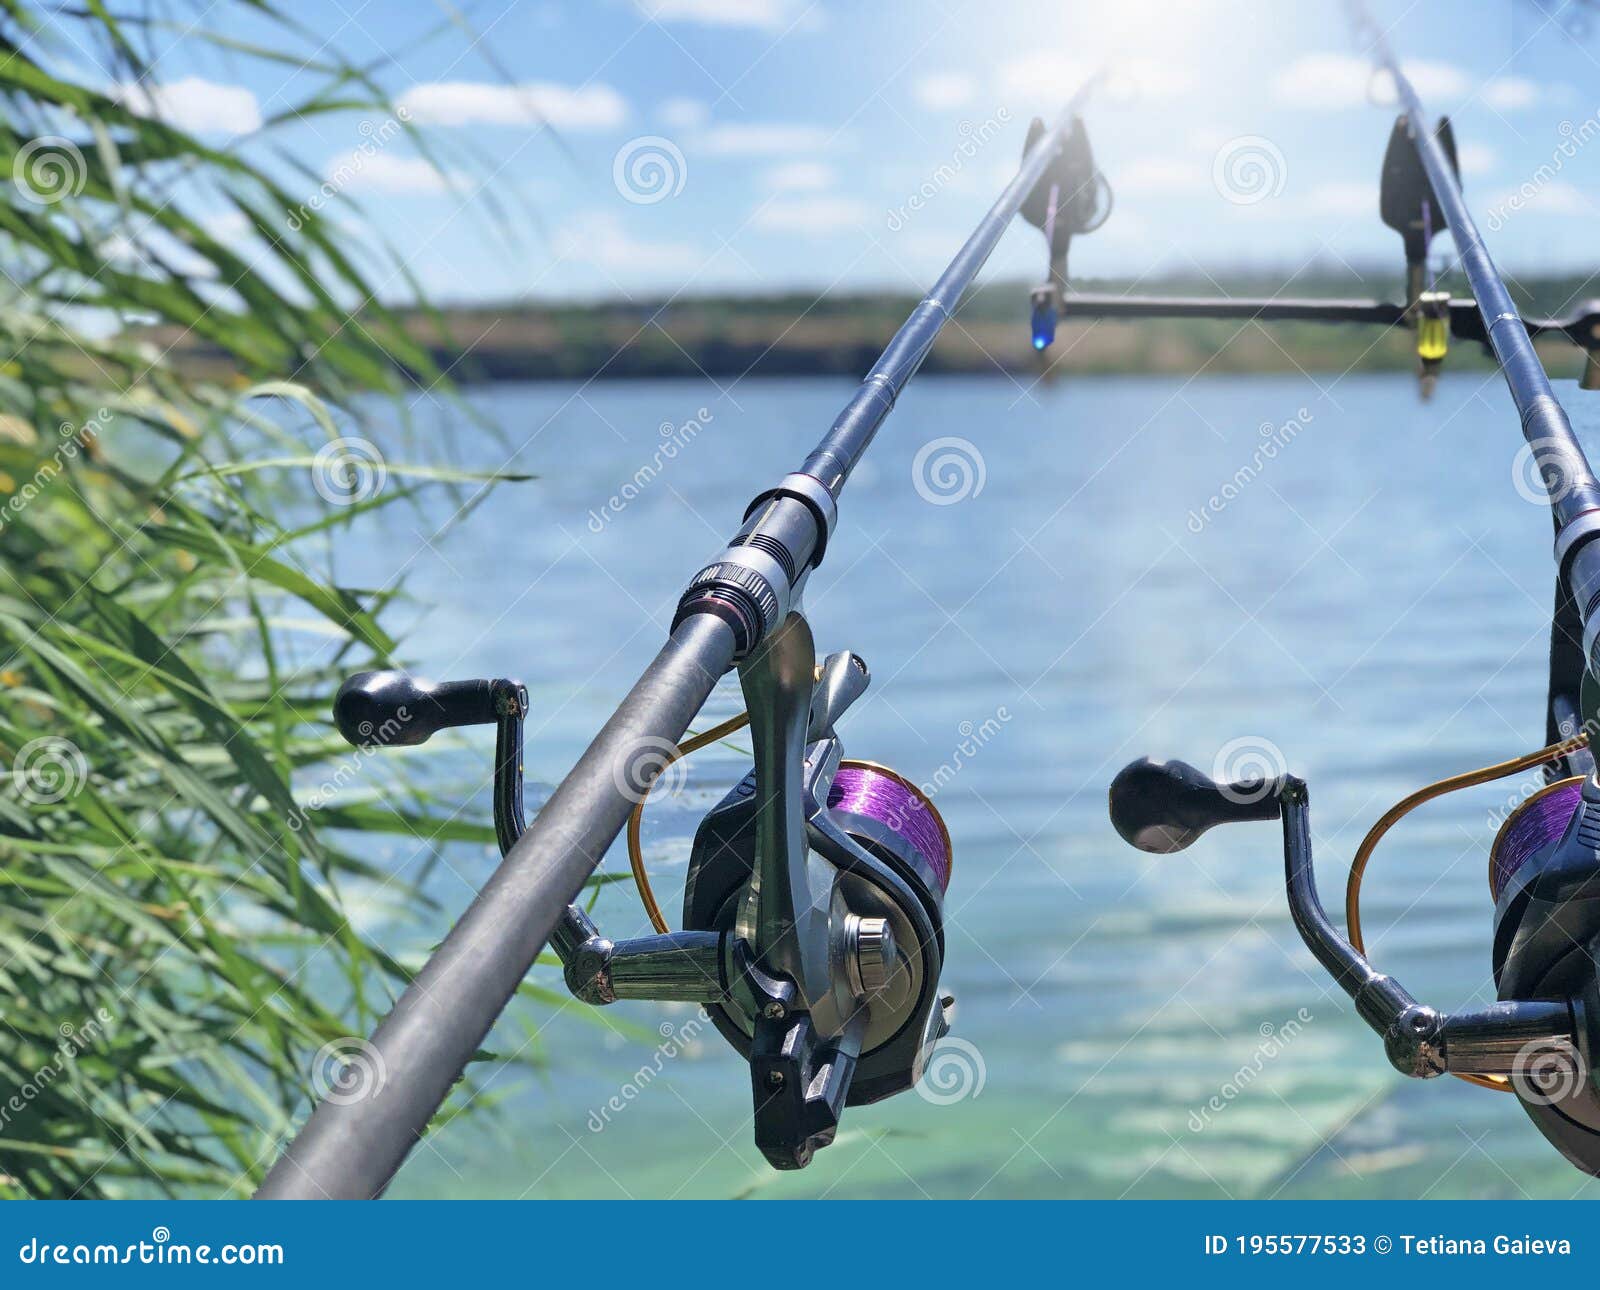 风景背景中的鱼竿库存图片. 图片包括有池塘, 诱剂, 设备, 没人, 捕鱼